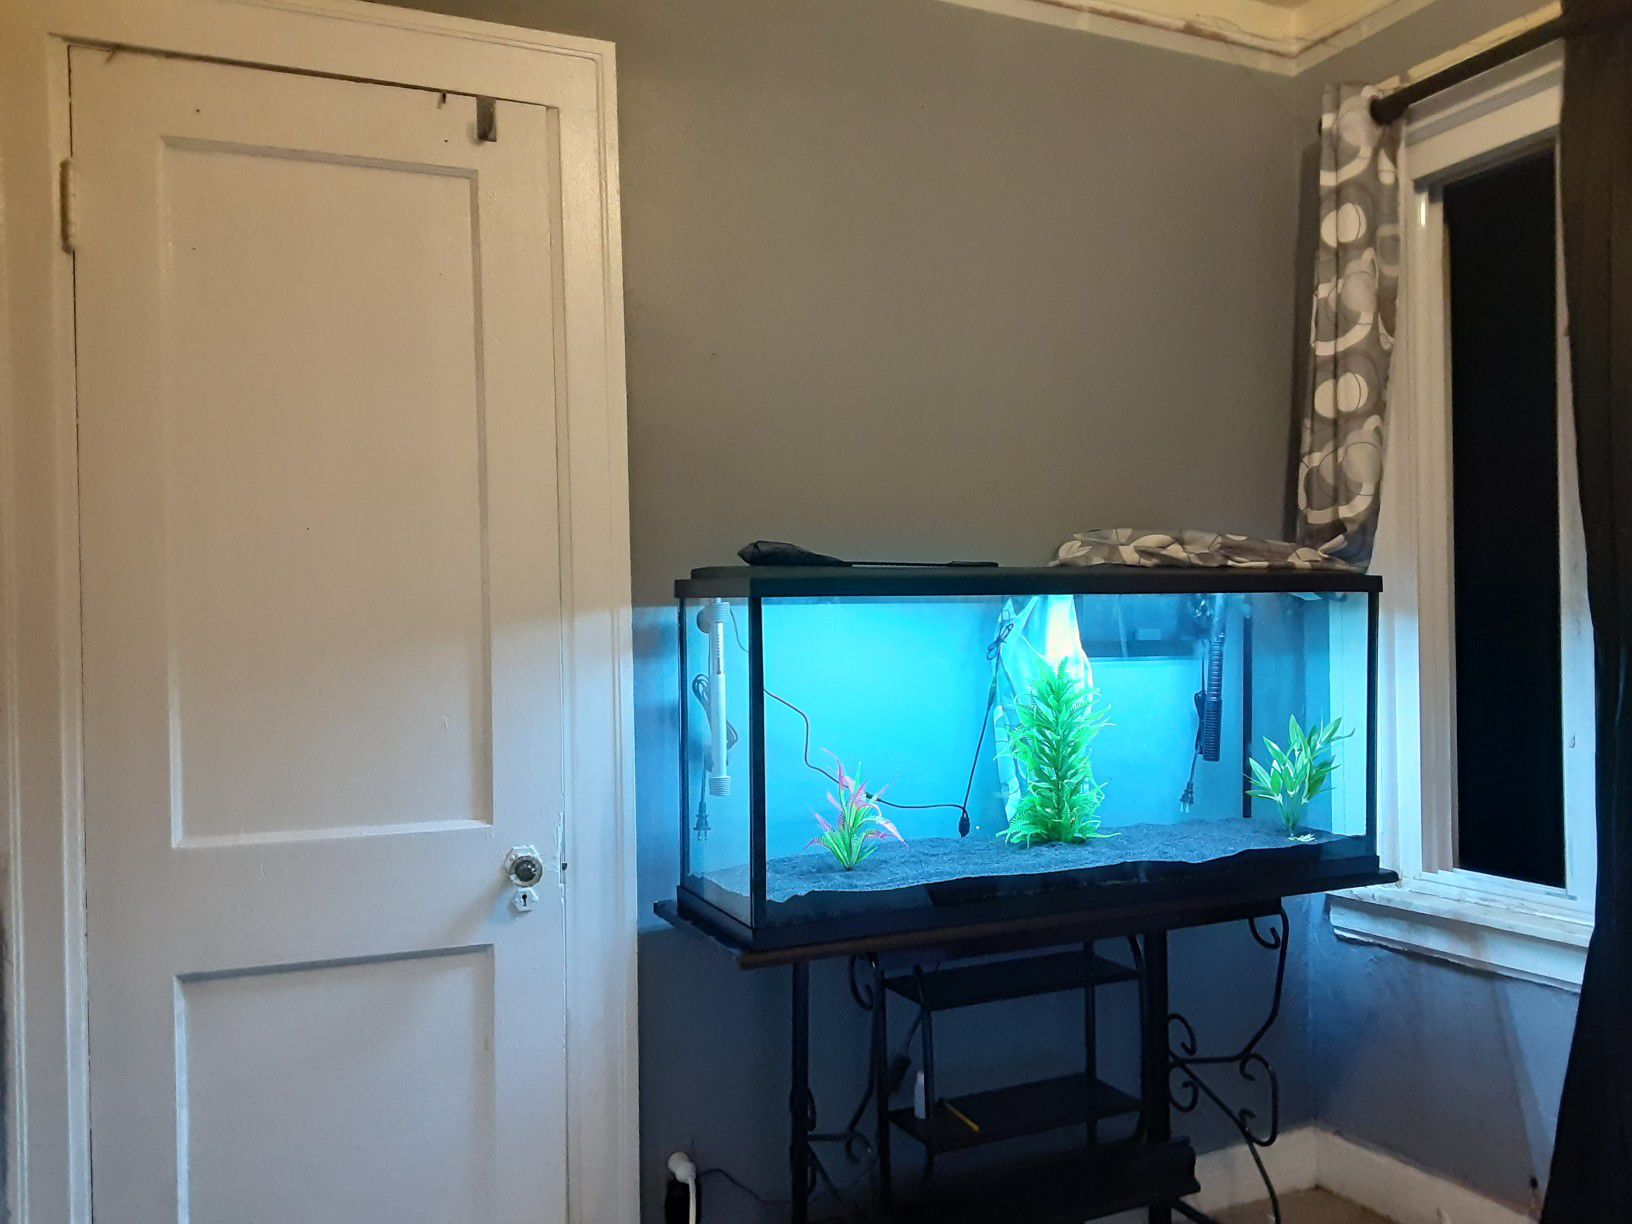 Brand new 55 gallon aquarium full setup